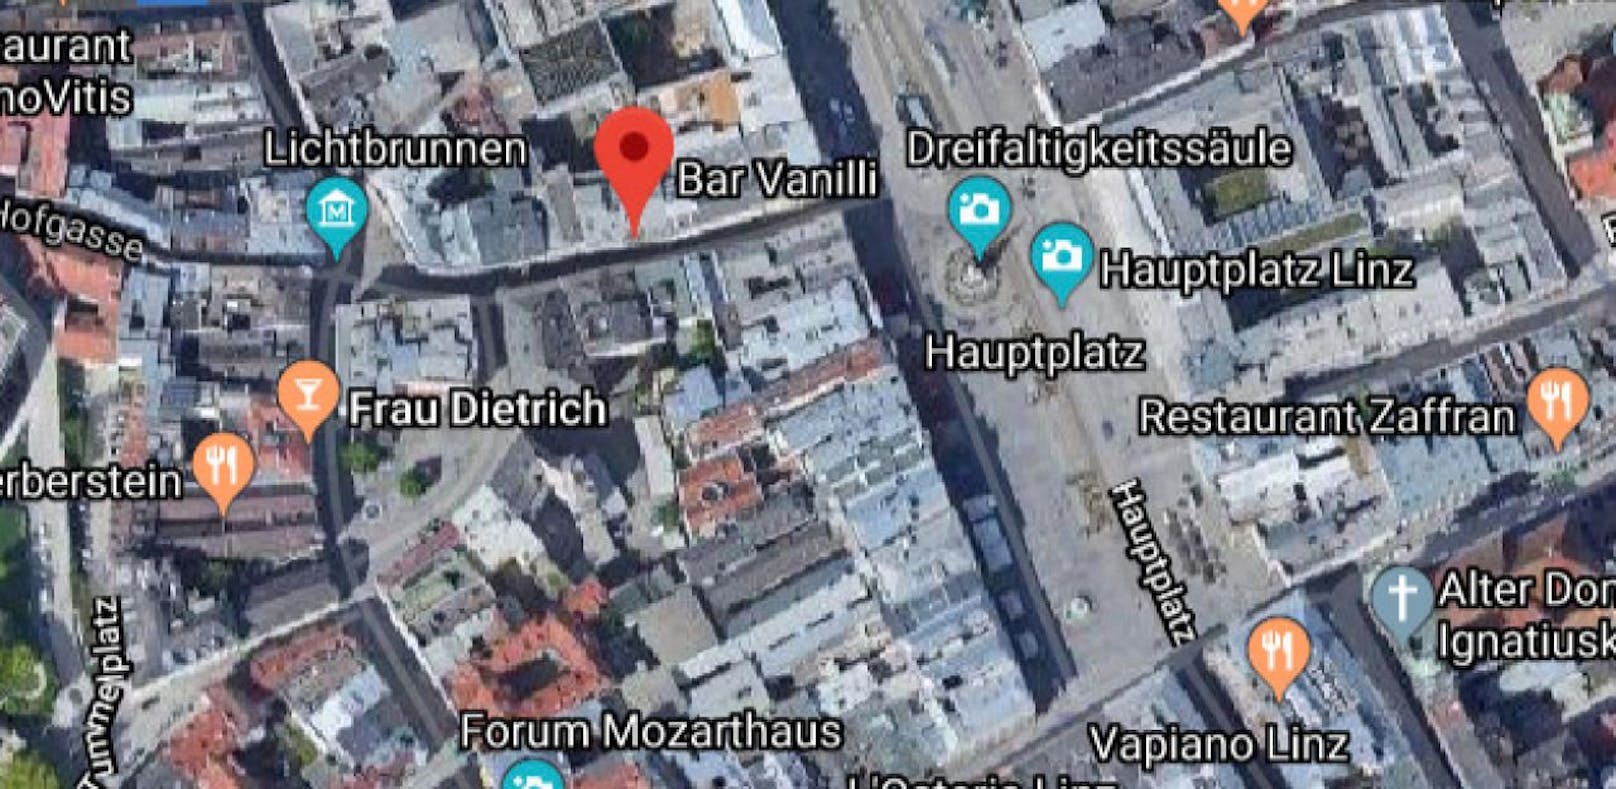 In der Linzer Altstadt wurde ein 28-Jähriger erst mit dem Schlagstock zu Boden geschlagen, dann trat ein zweiter Täter mit dem Fuß auf ihn ein.